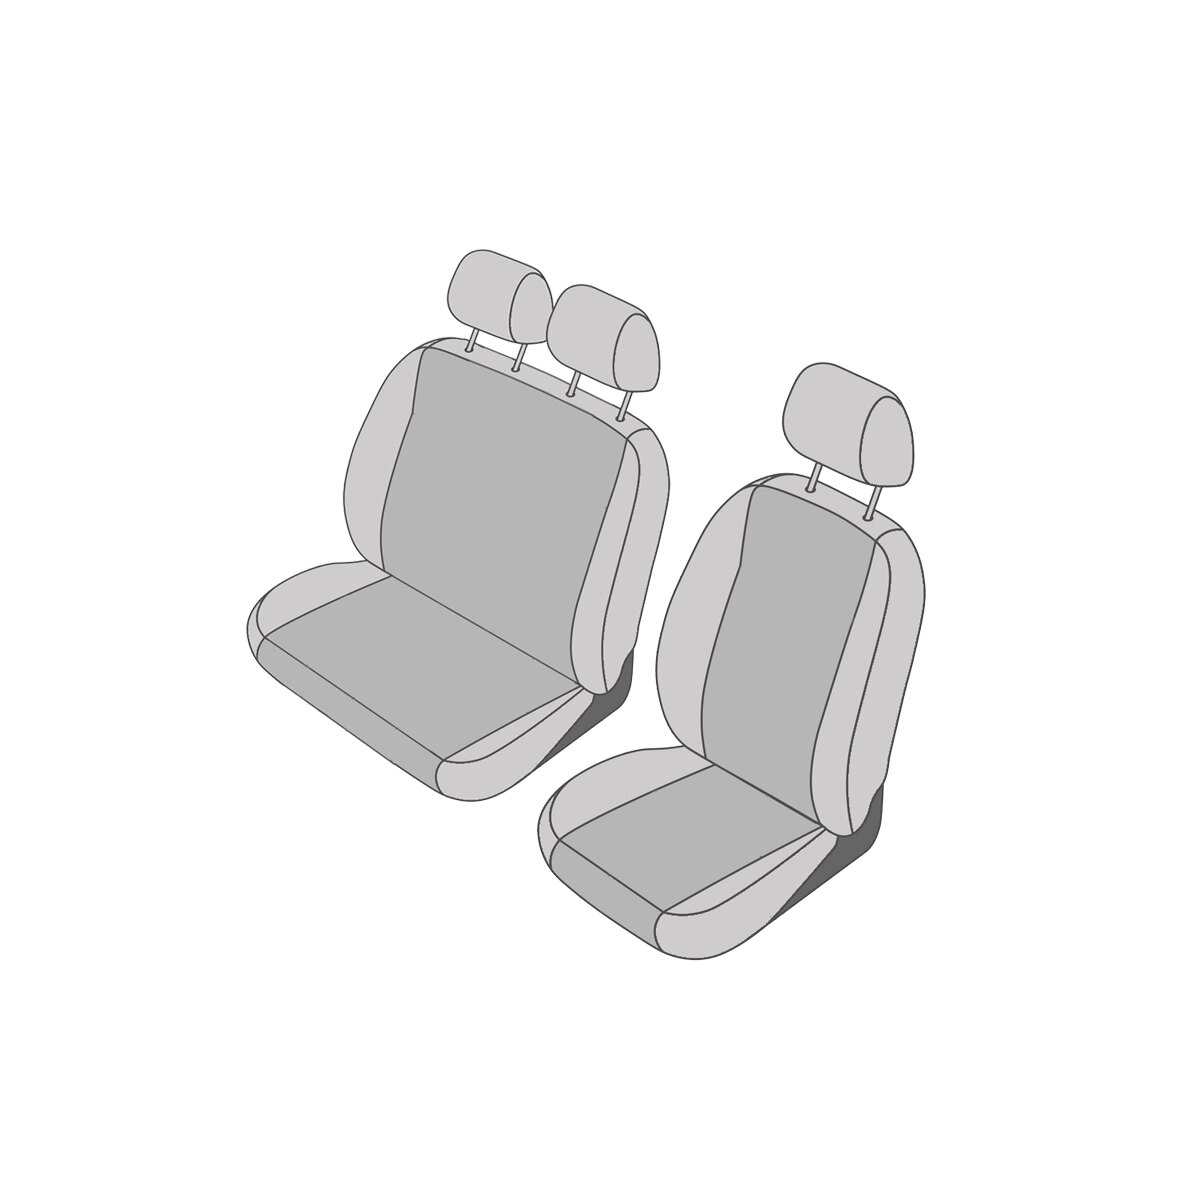 Sitzbezug Sitzfläche Vordersitz für Mercedes Benz W212 schwarz, 99